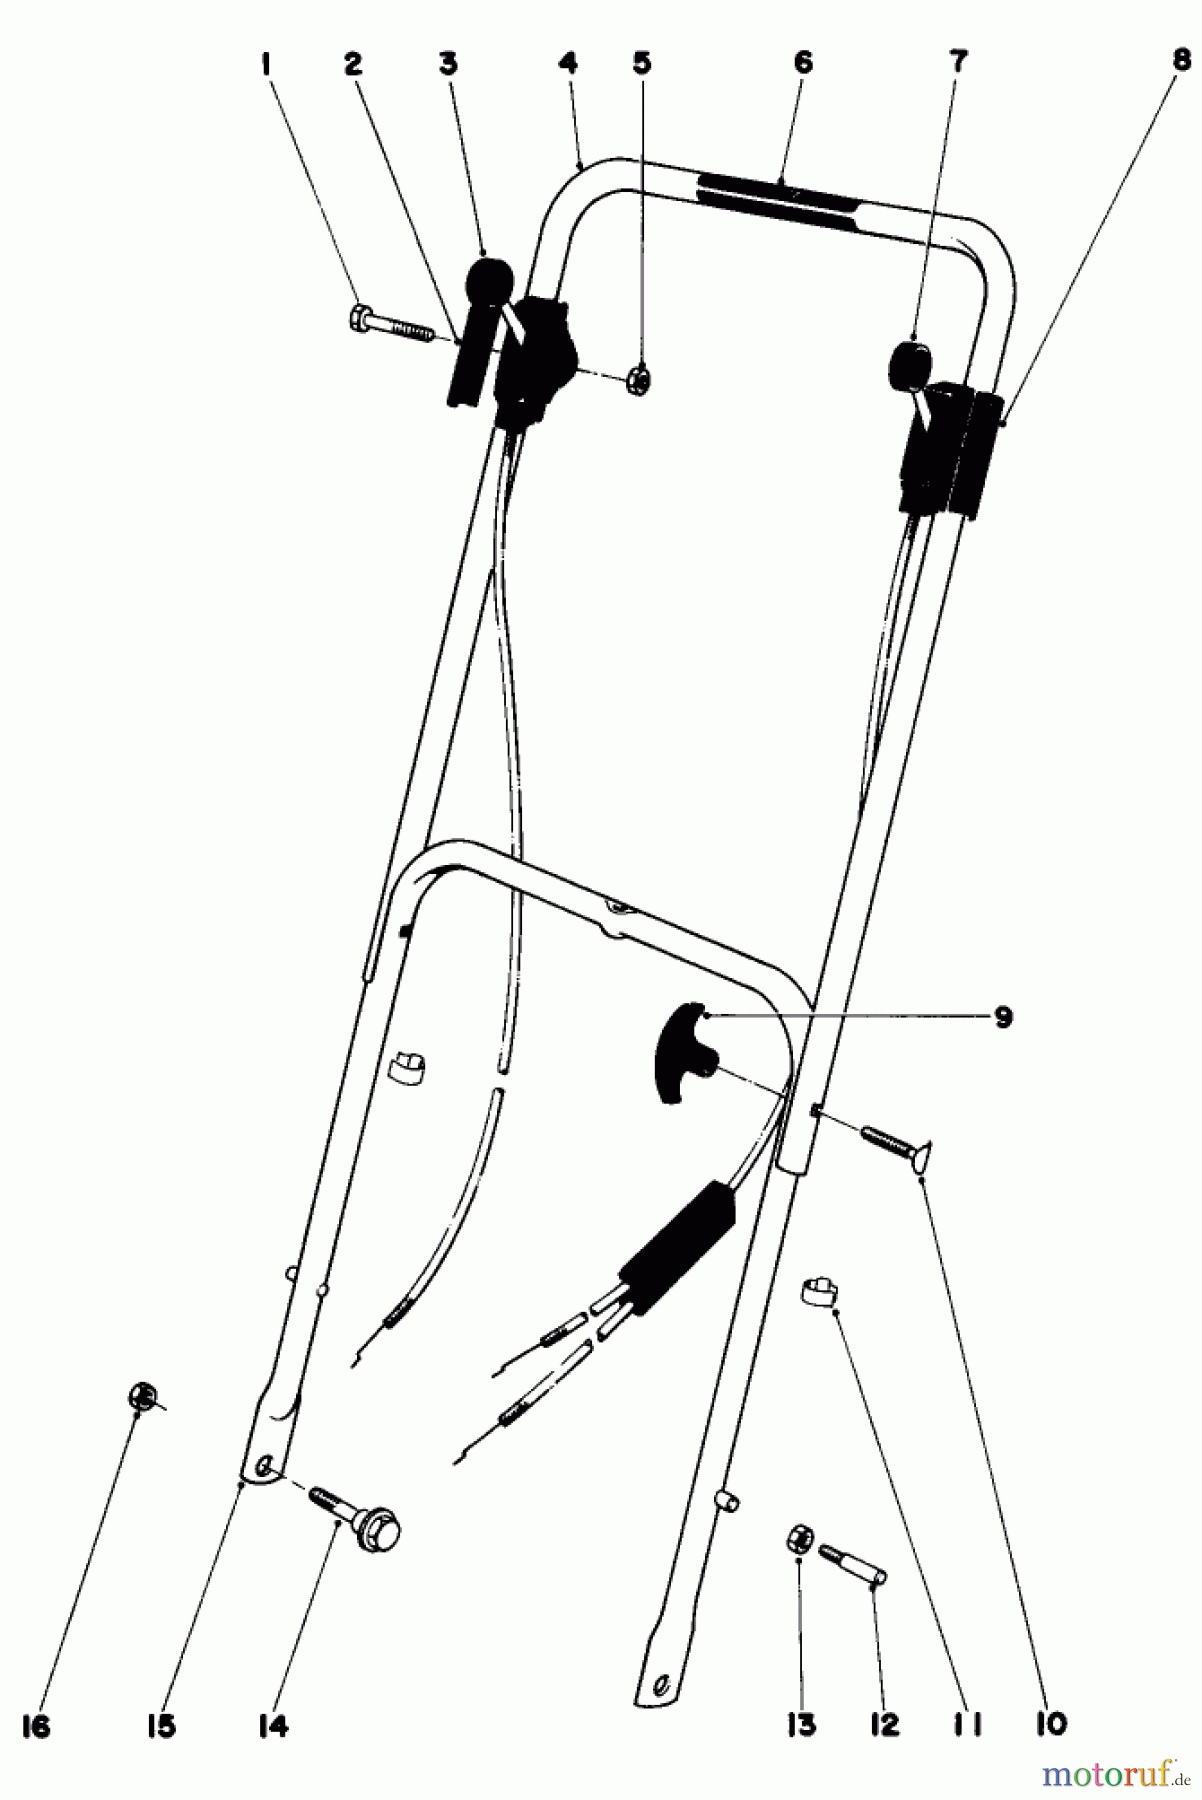  Toro Neu Mowers, Walk-Behind Seite 1 16277 - Toro Whirlwind Lawnmower, 1979 (9000001-9999999) HANDLE ASSEMBLY 16227